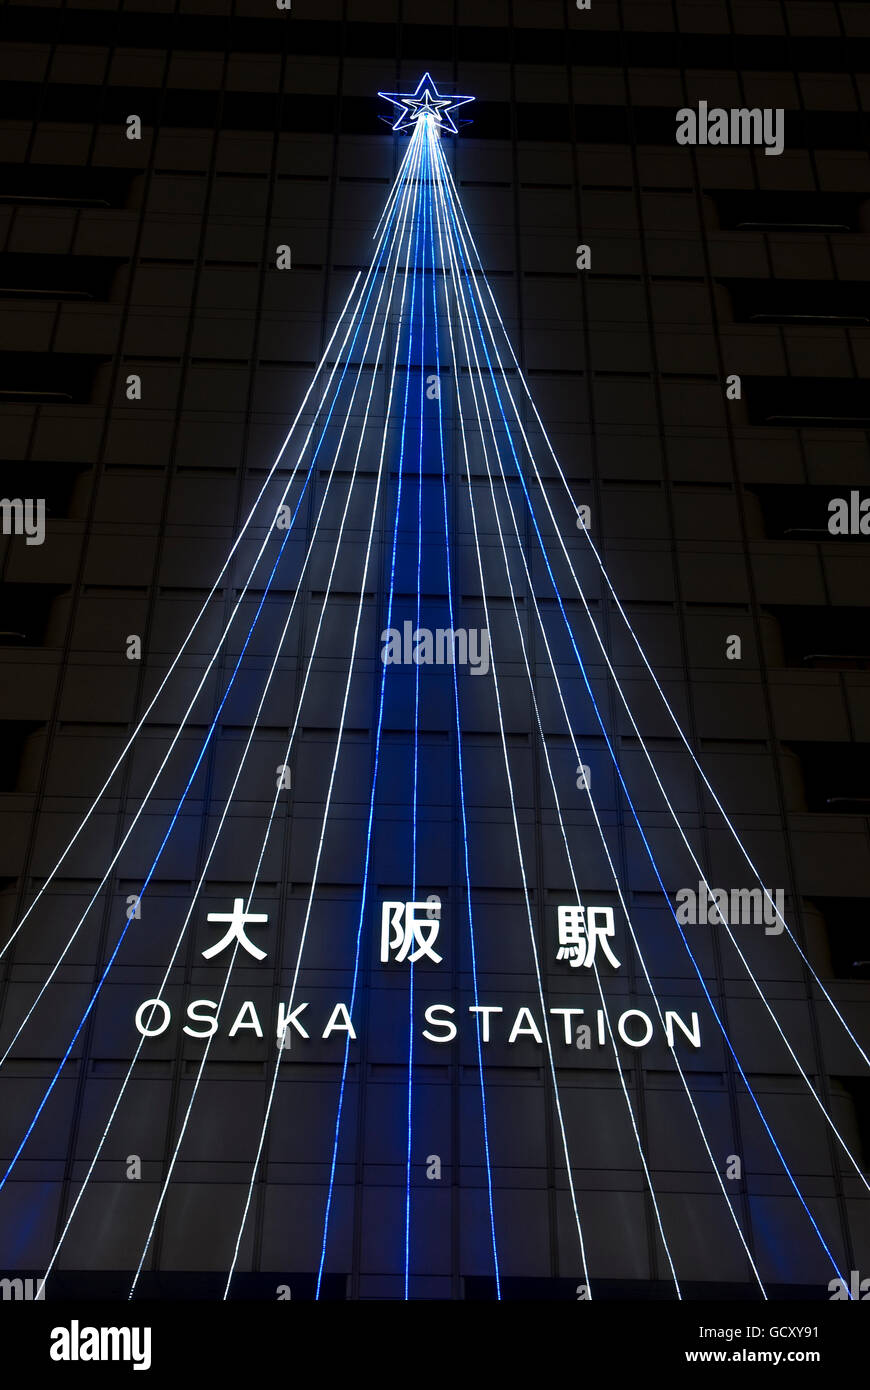 Osaka Station with Christmas decoration, illuminated at dusk, Osaka, Japan, Asia Stock Photo